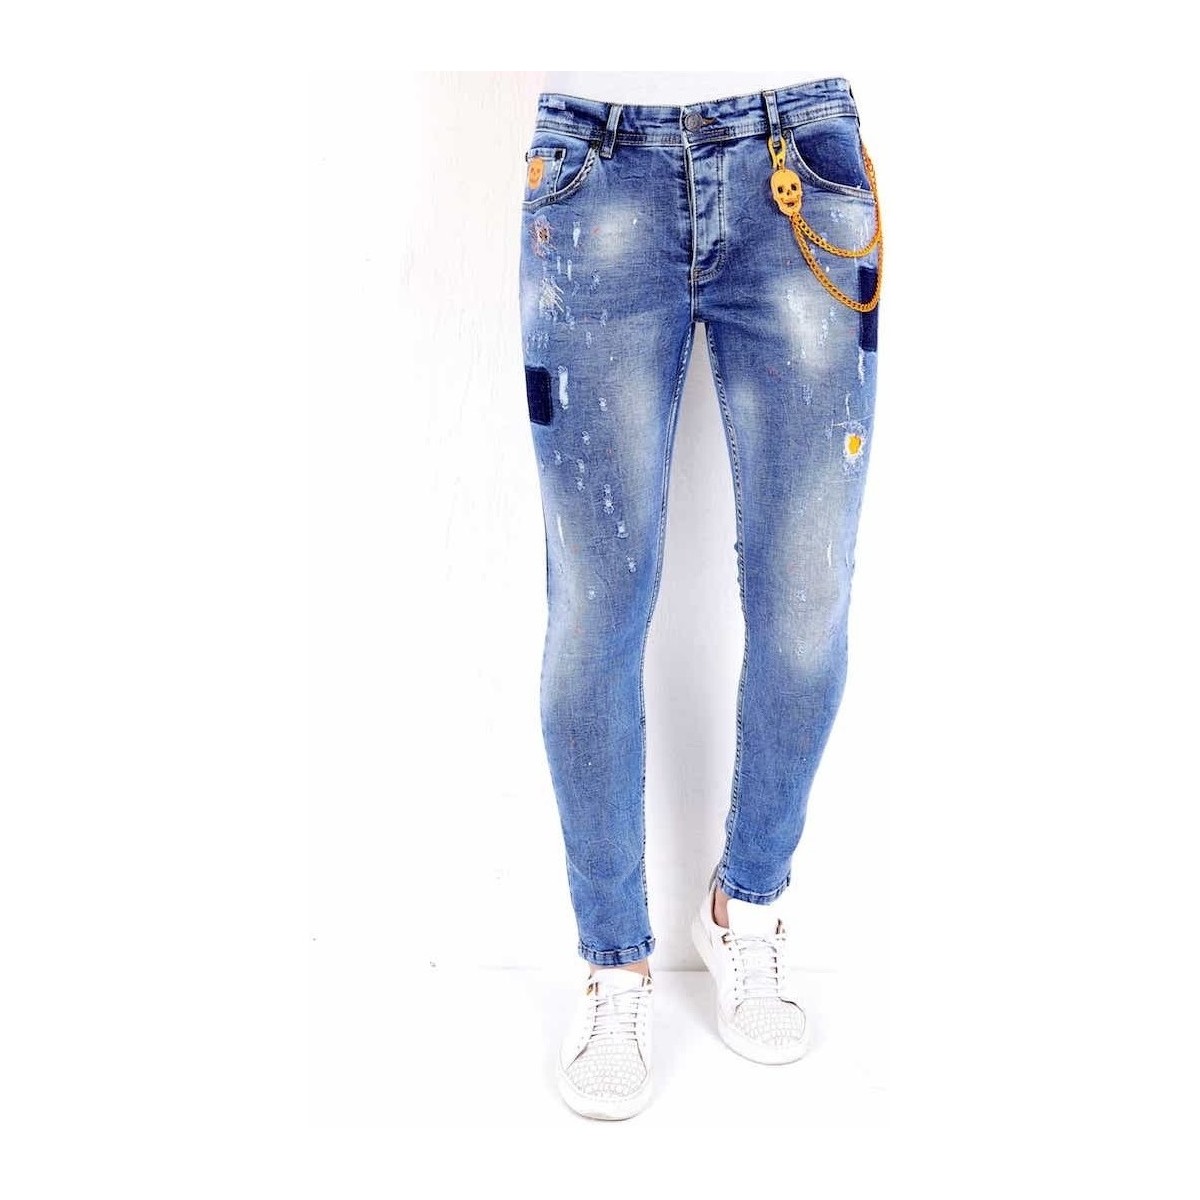 Kleidung Herren Slim Fit Jeans Local Fanatic Jeans Mit Farbspritzer Blau